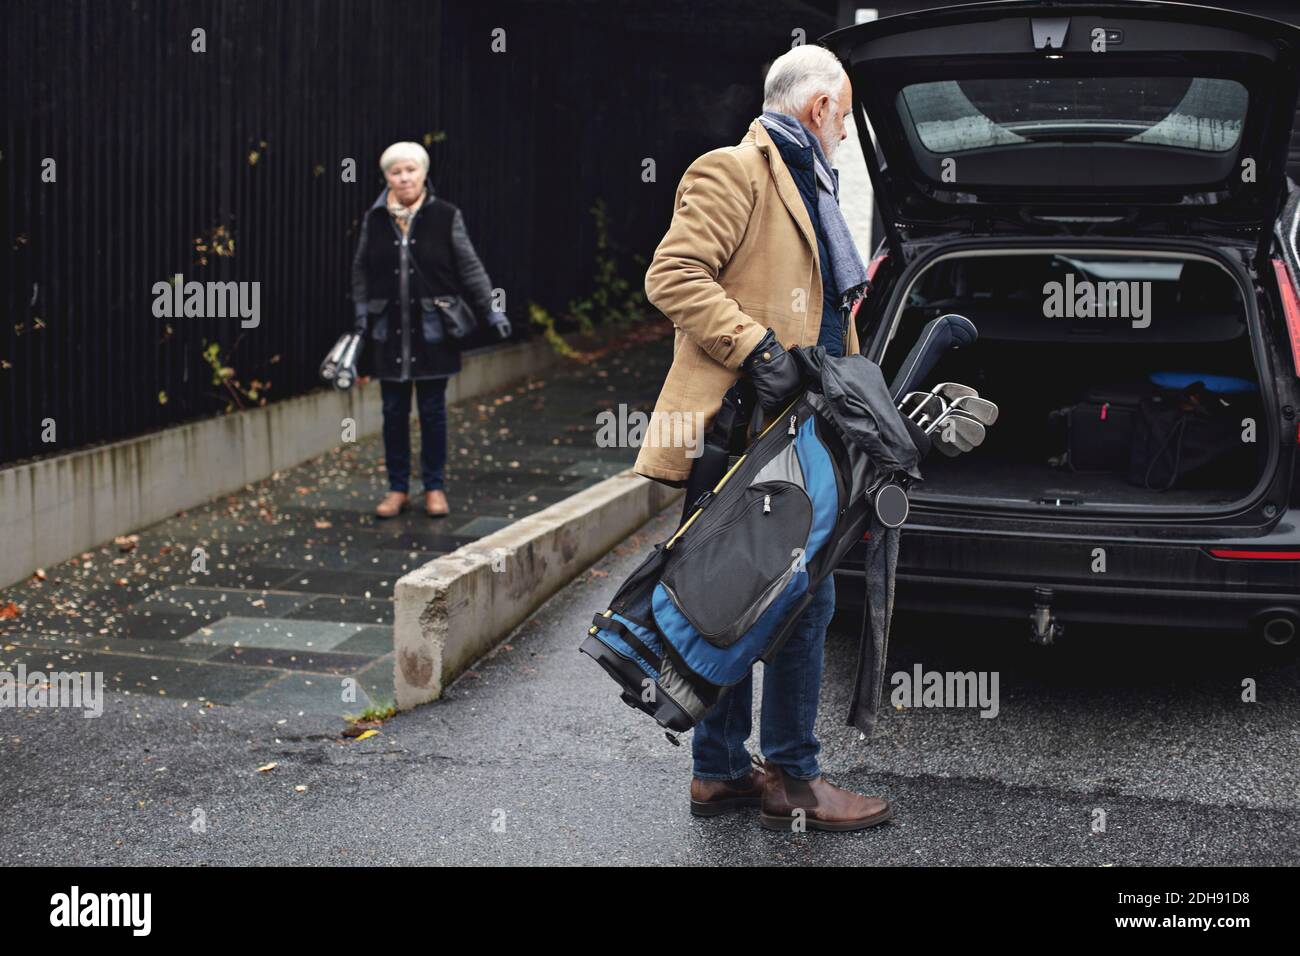 Älterer Mann hält Golftasche am Kofferraum des Autos, während sie weiblich ist Partner steht im Winter auf dem Bürgersteig Stockfoto